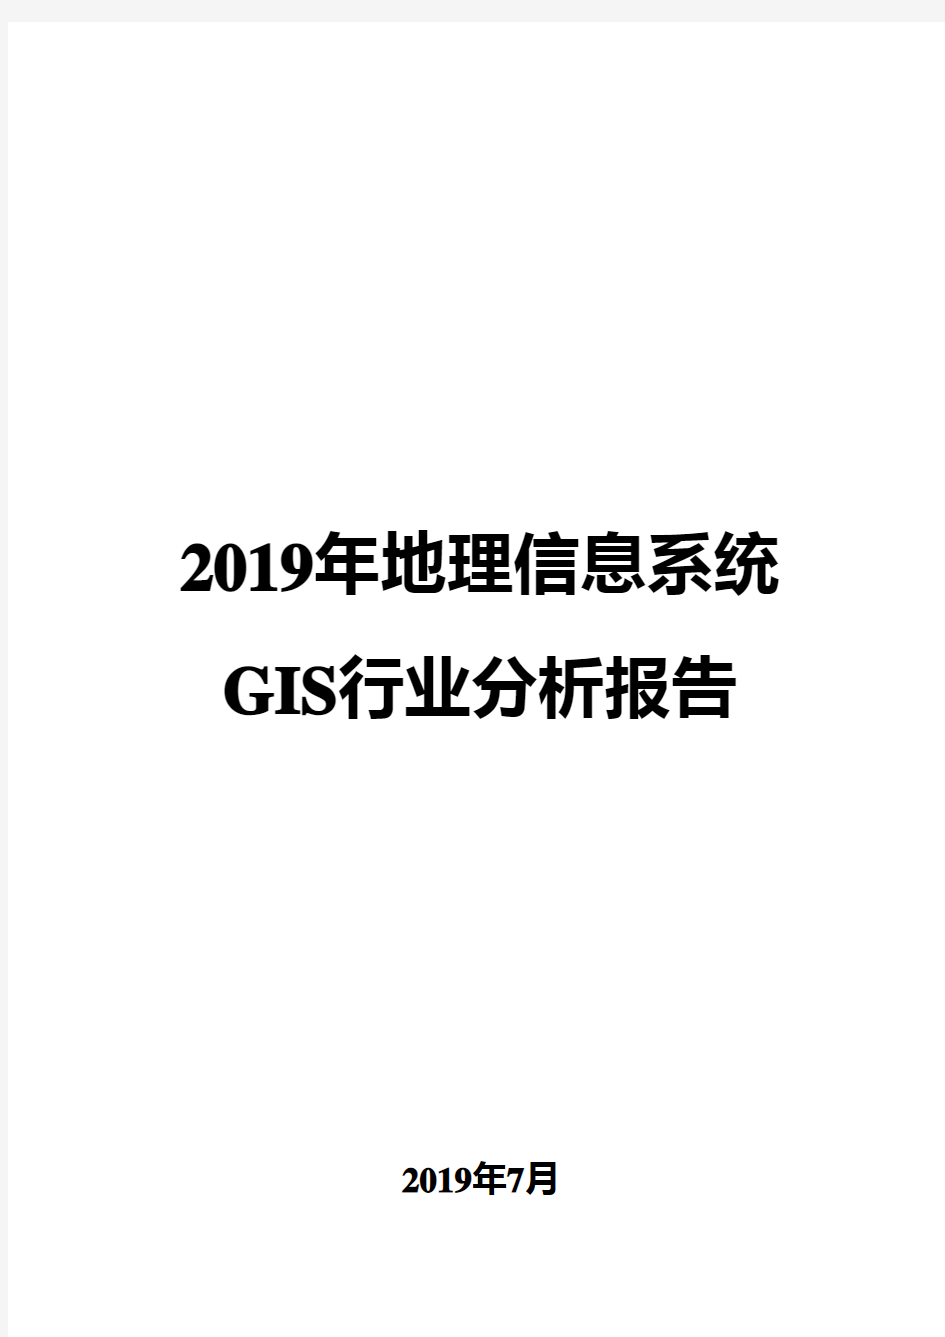 2019年地理信息系统GIS行业分析报告